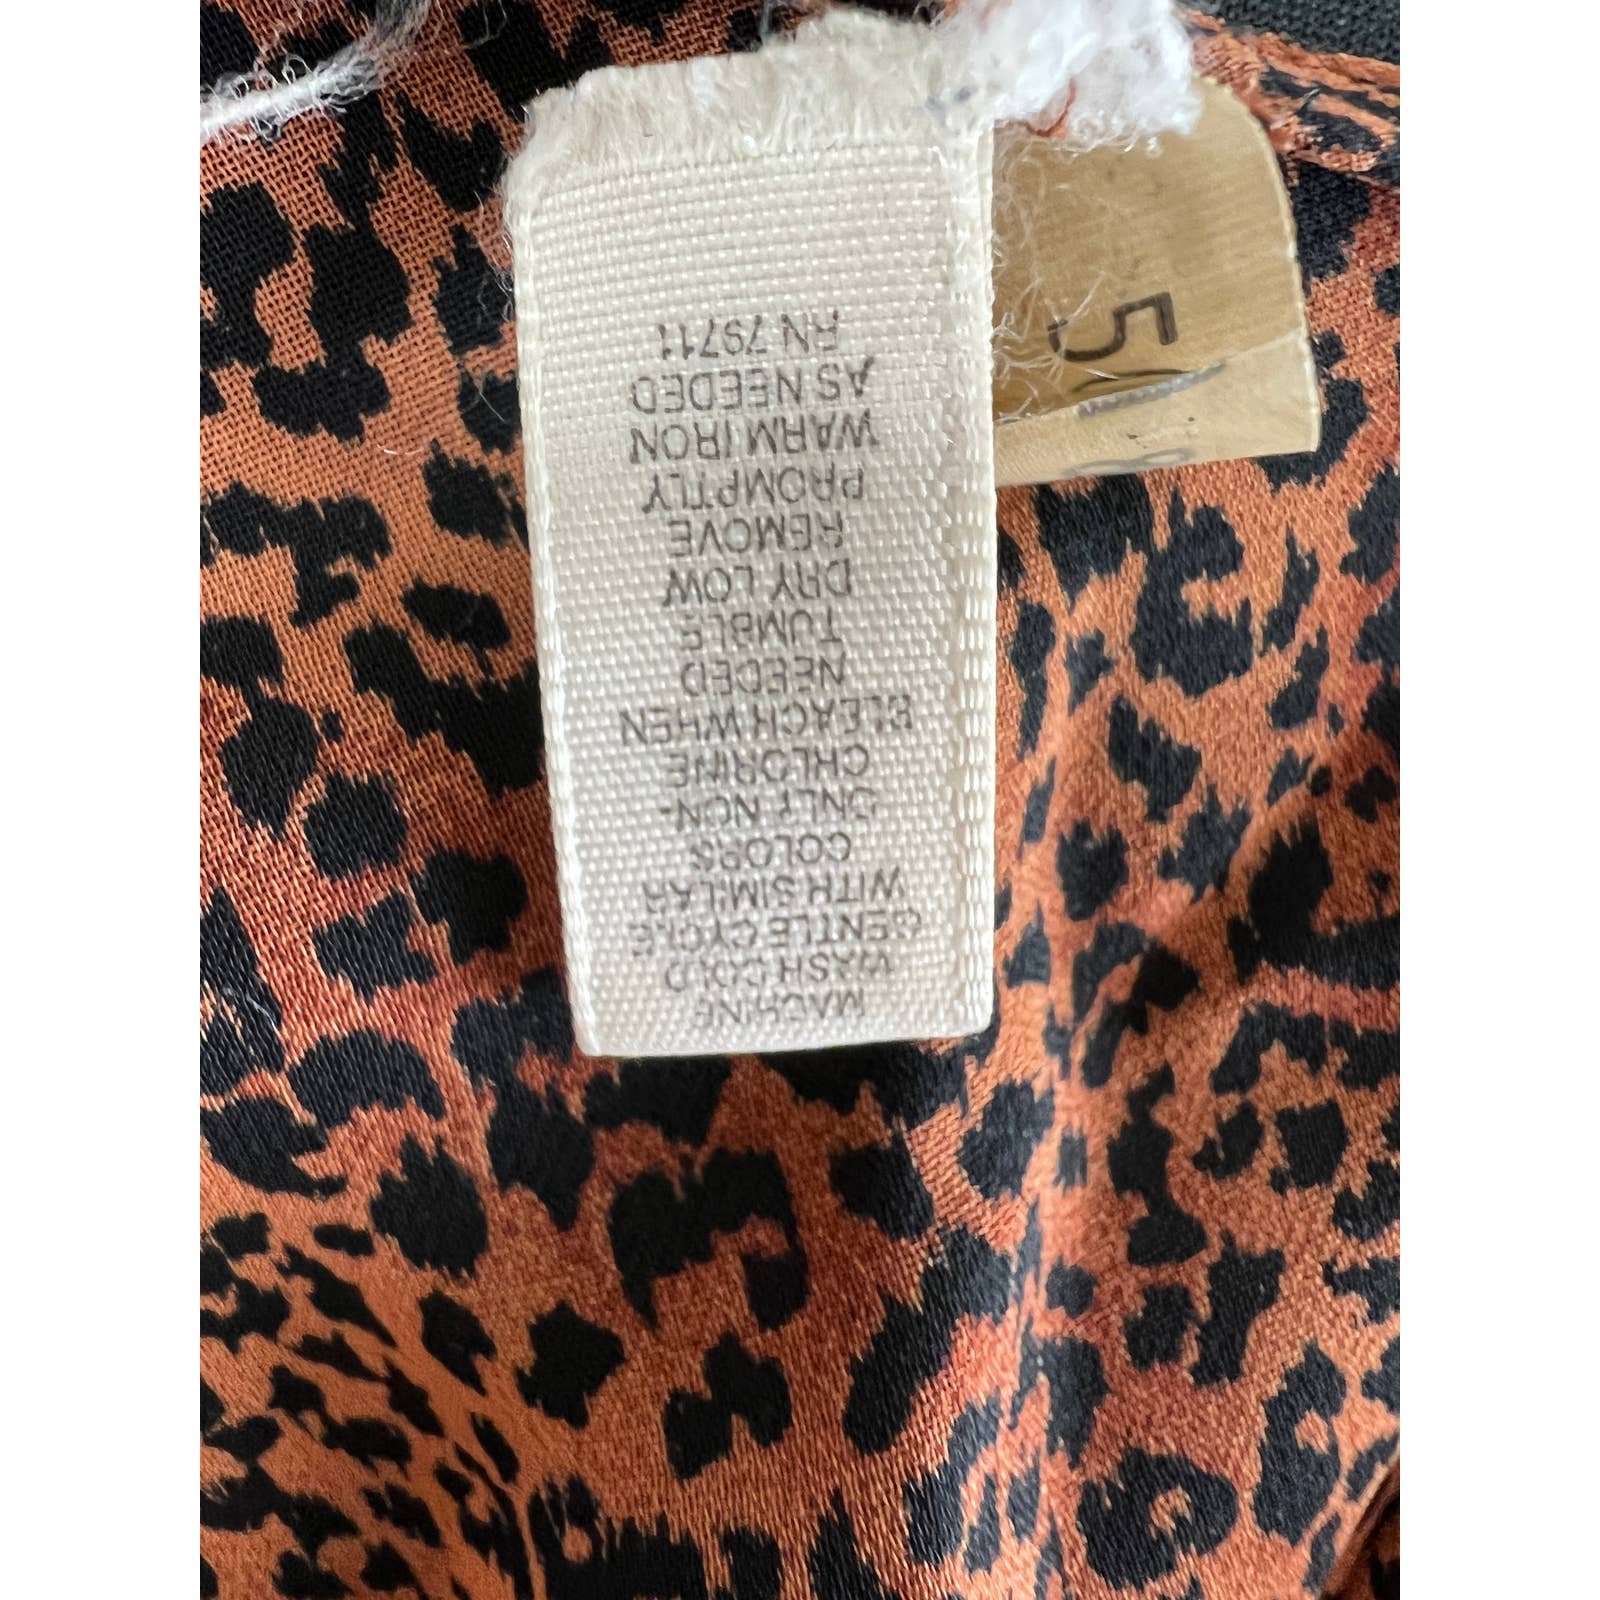 Gorgeous VINTAGE Victoria´s Secret Brown Leopard Print Slip V-Neck Camisole Large L VTG nYyVKfkA1 Great